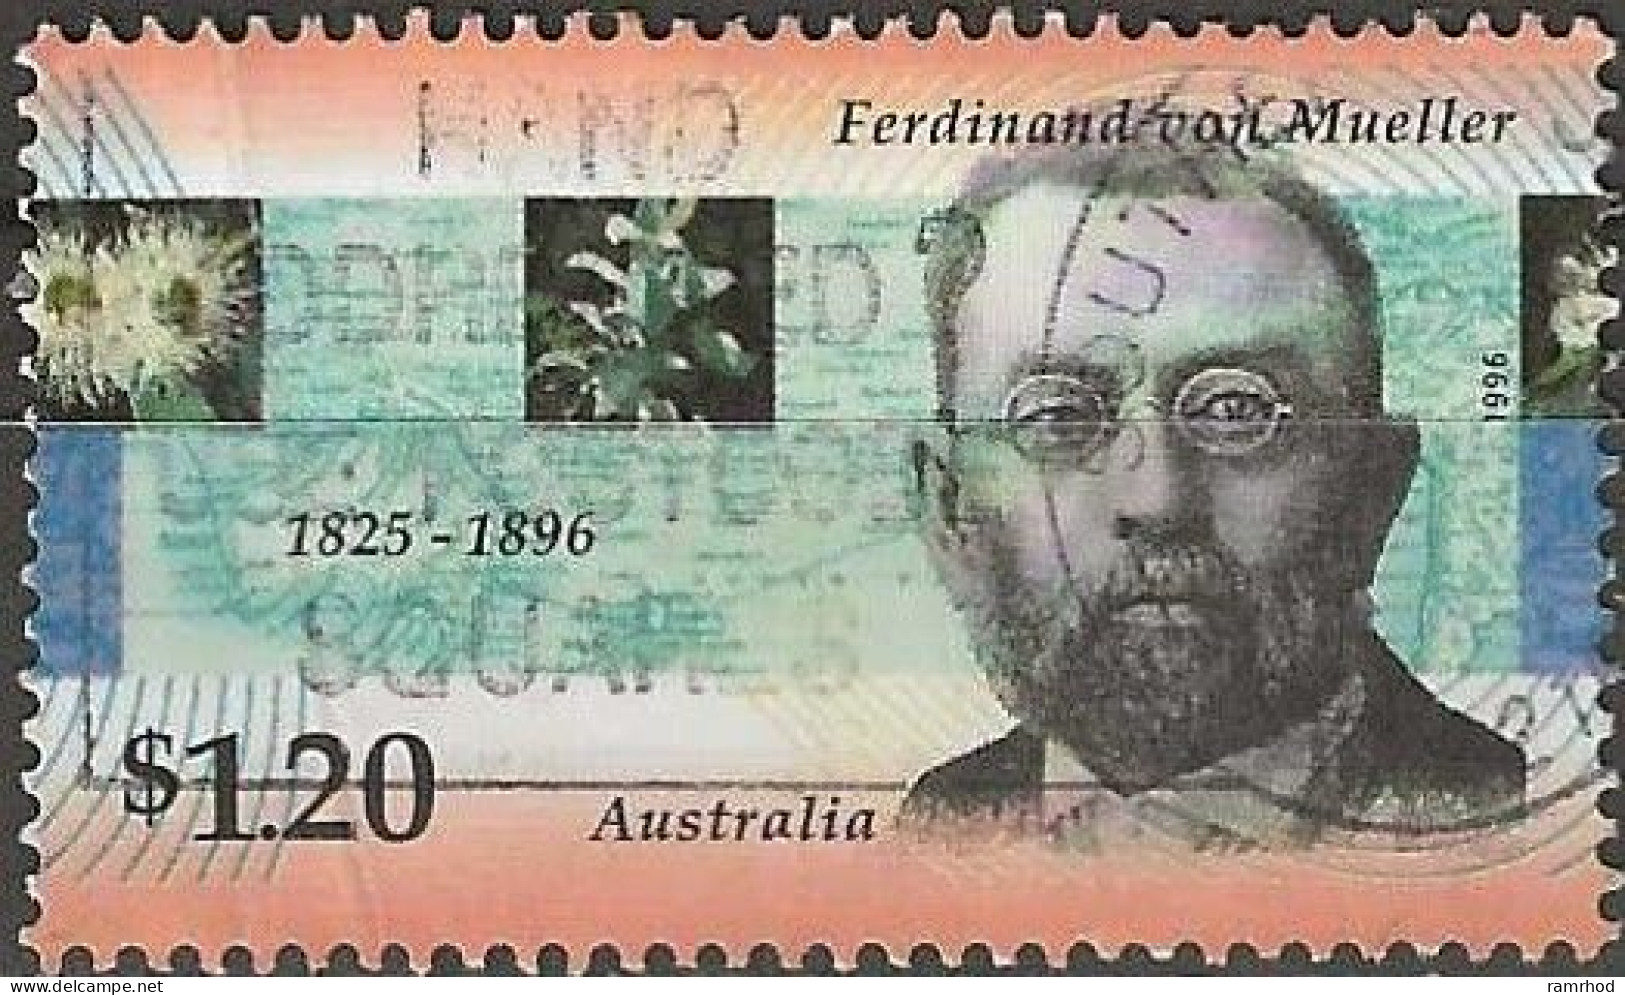 AUSTRALIA 1996 Death Centenary Of Ferdinand Von Mueller (botanist) - $1.20 Ferdinand Von Mueller FU - Oblitérés